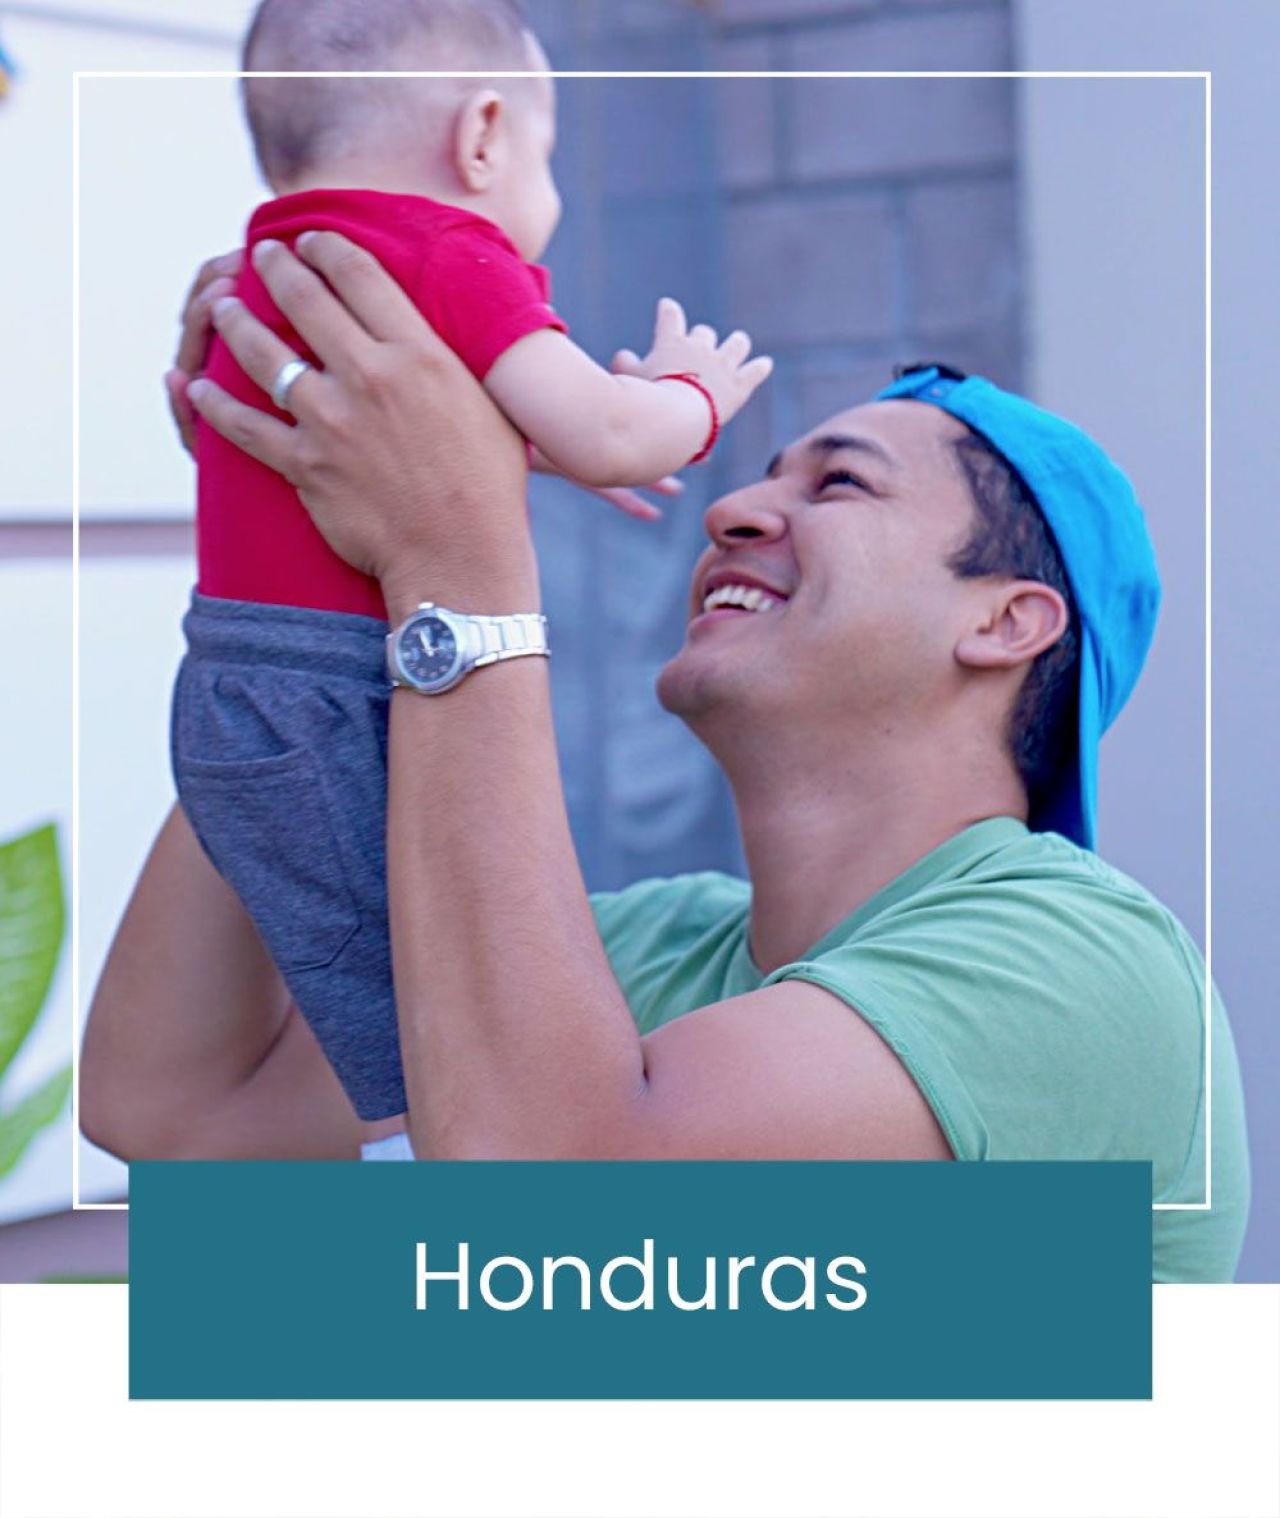 Honduras Buttons